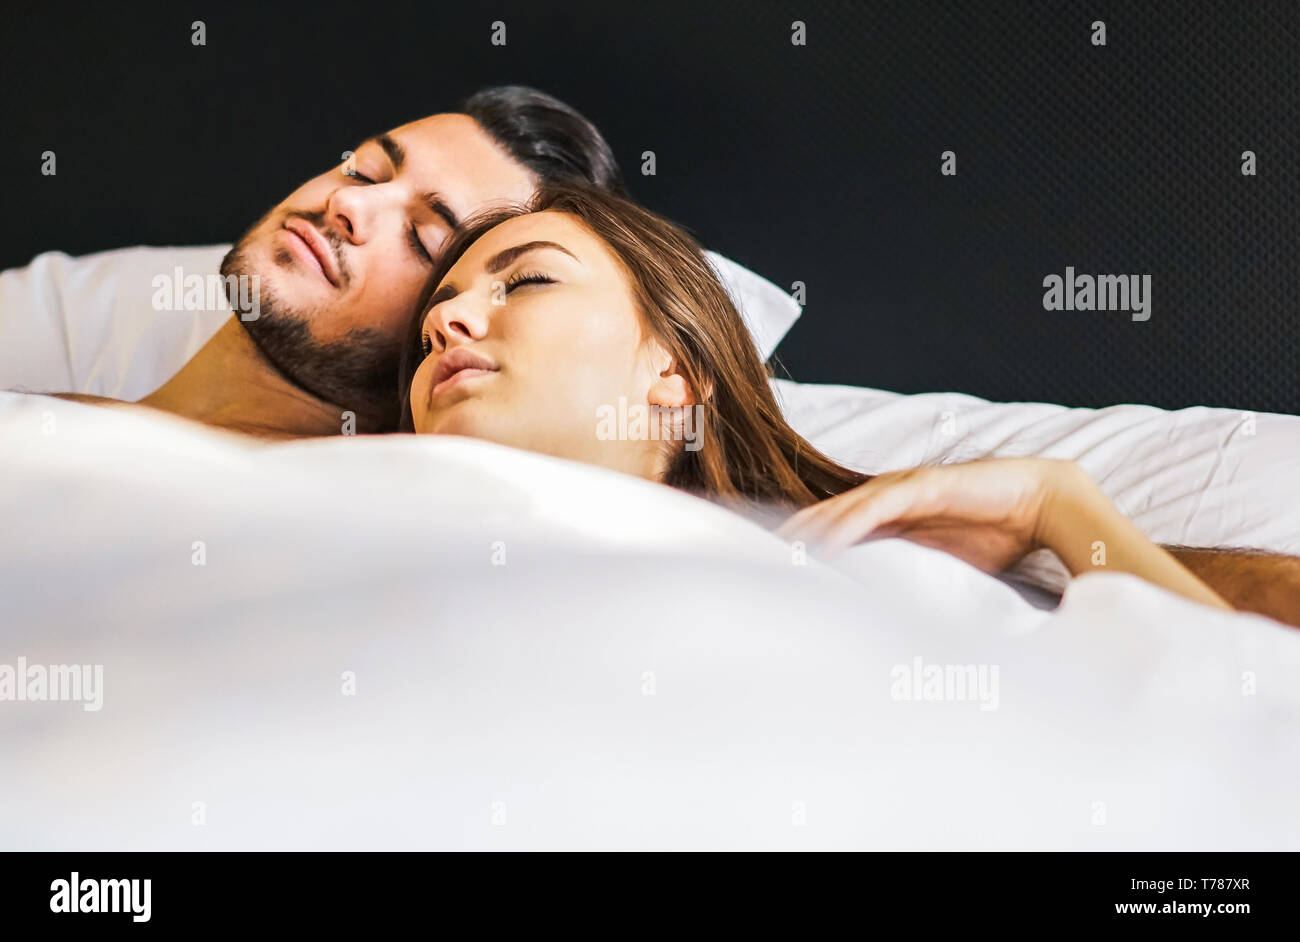 Liebevolle junge Paare schlafen zusammen in einem Bett mit weißen Laken zu Hause - Momente des Lebens von Menschen in Liebe im Schlafzimmer Stockfoto